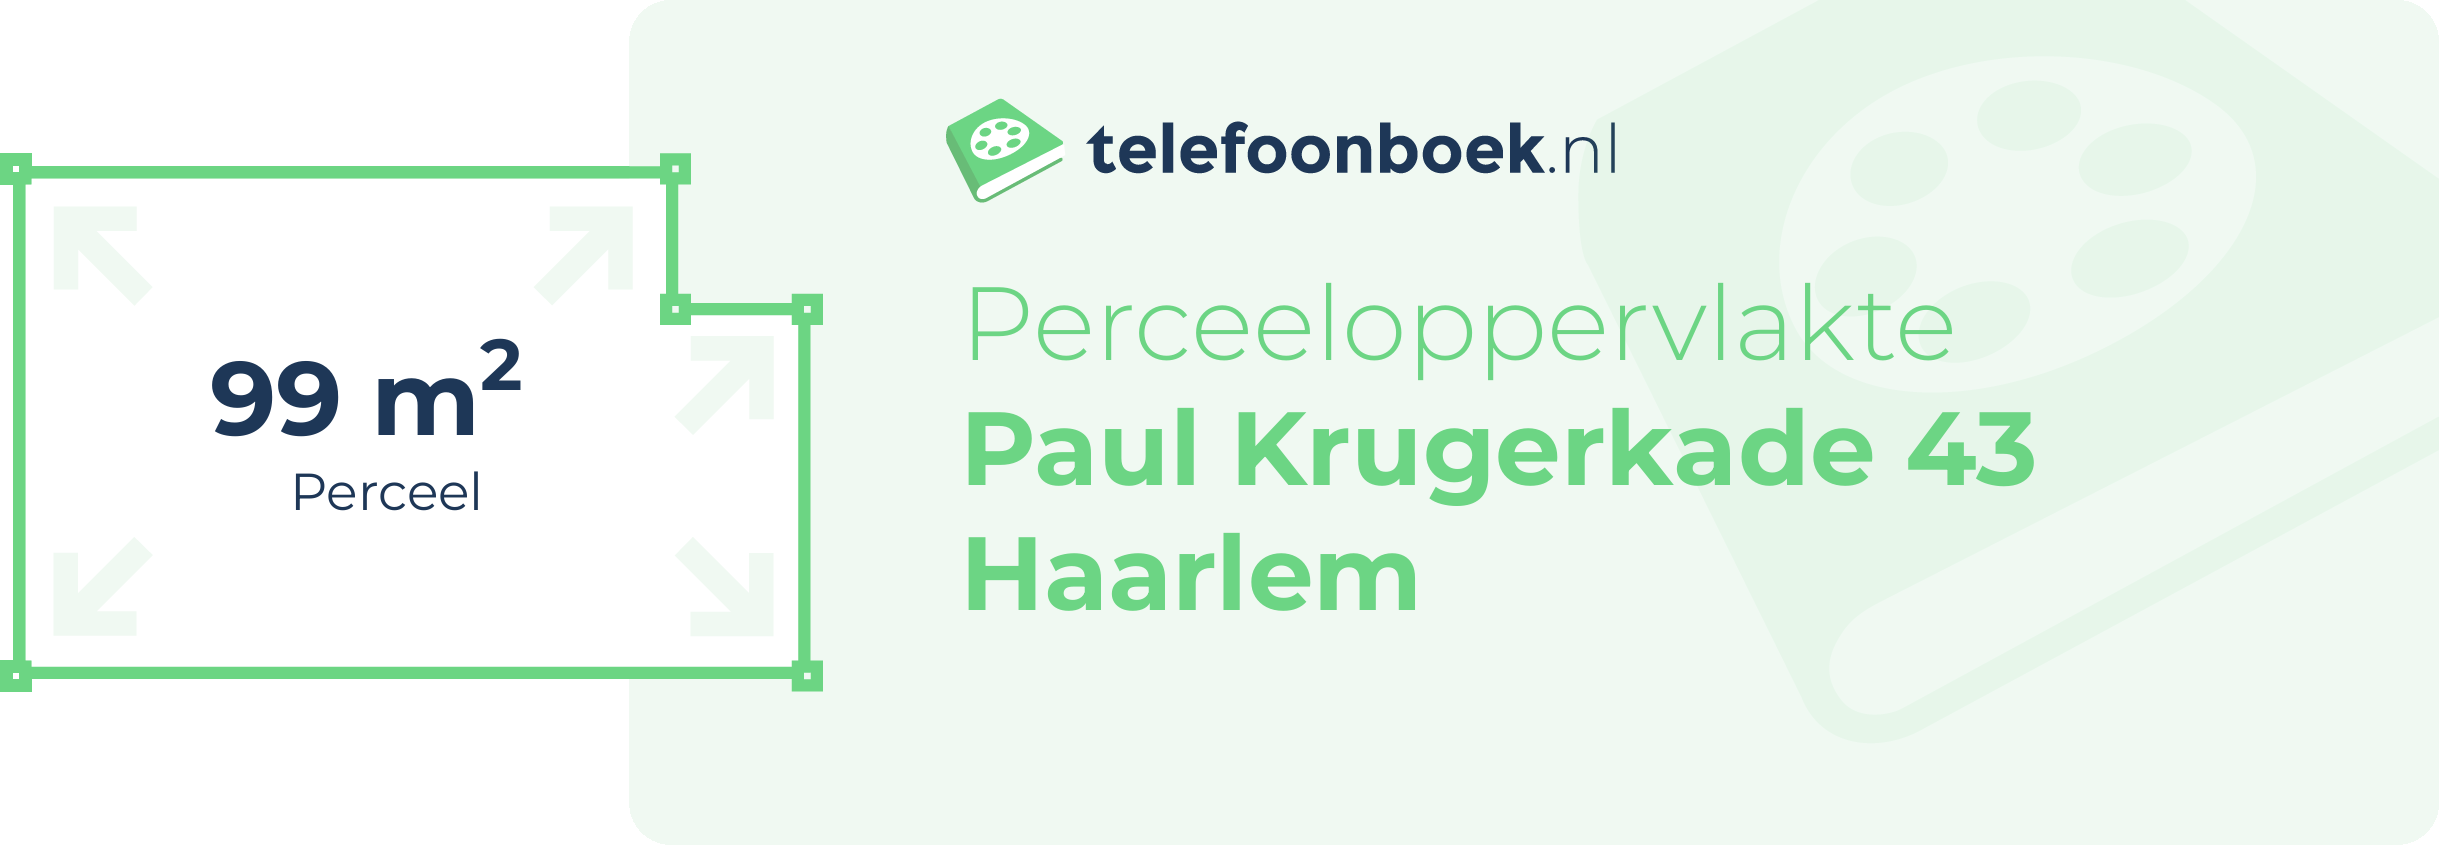 Perceeloppervlakte Paul Krugerkade 43 Haarlem